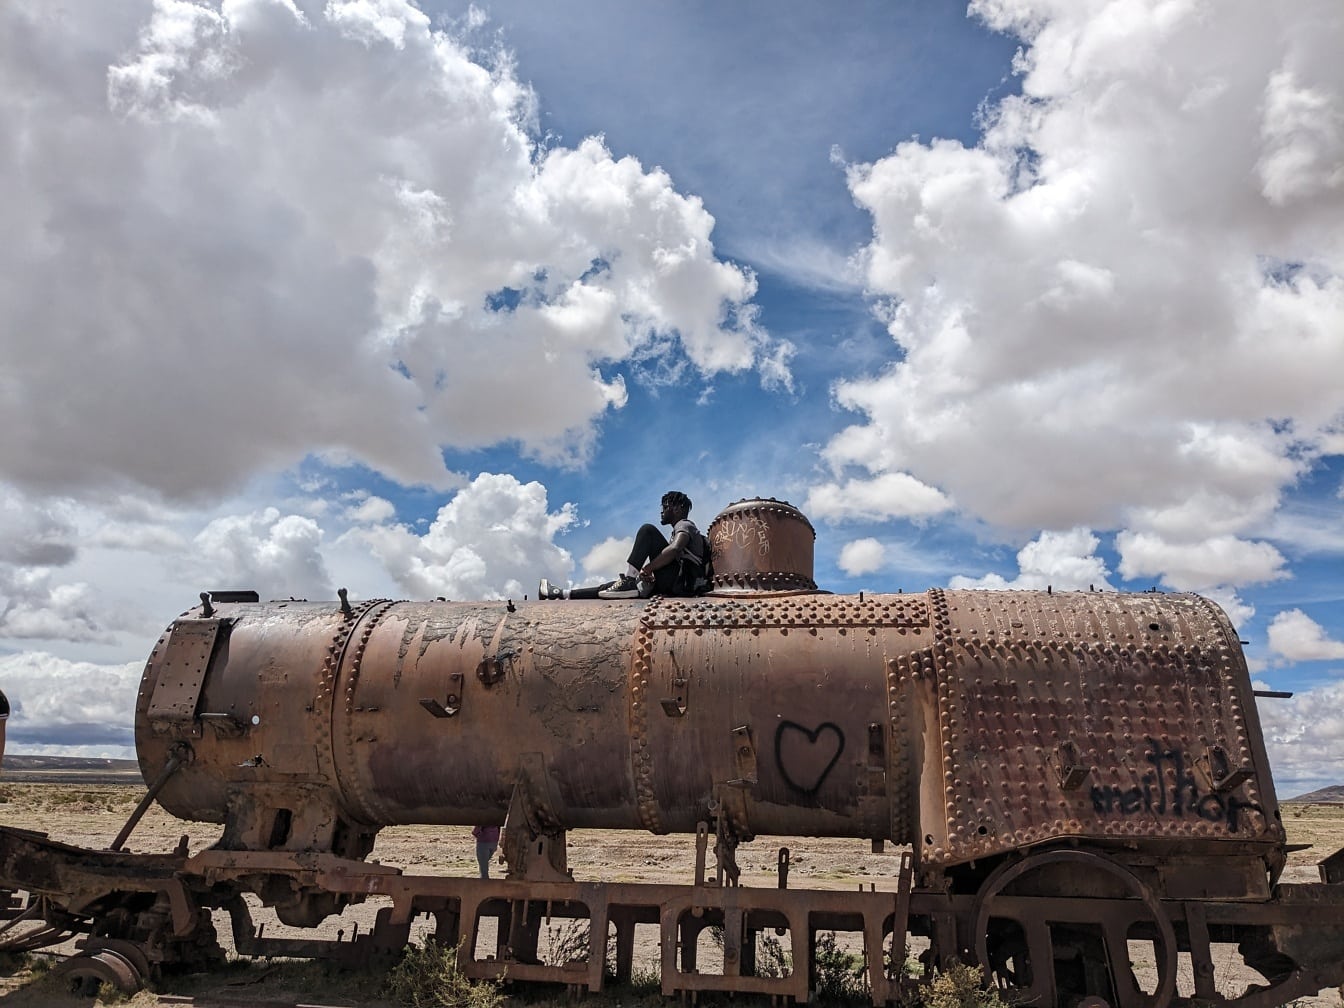 Pessoa sentada em cima de um velho trem enferrujado abandonado no deserto